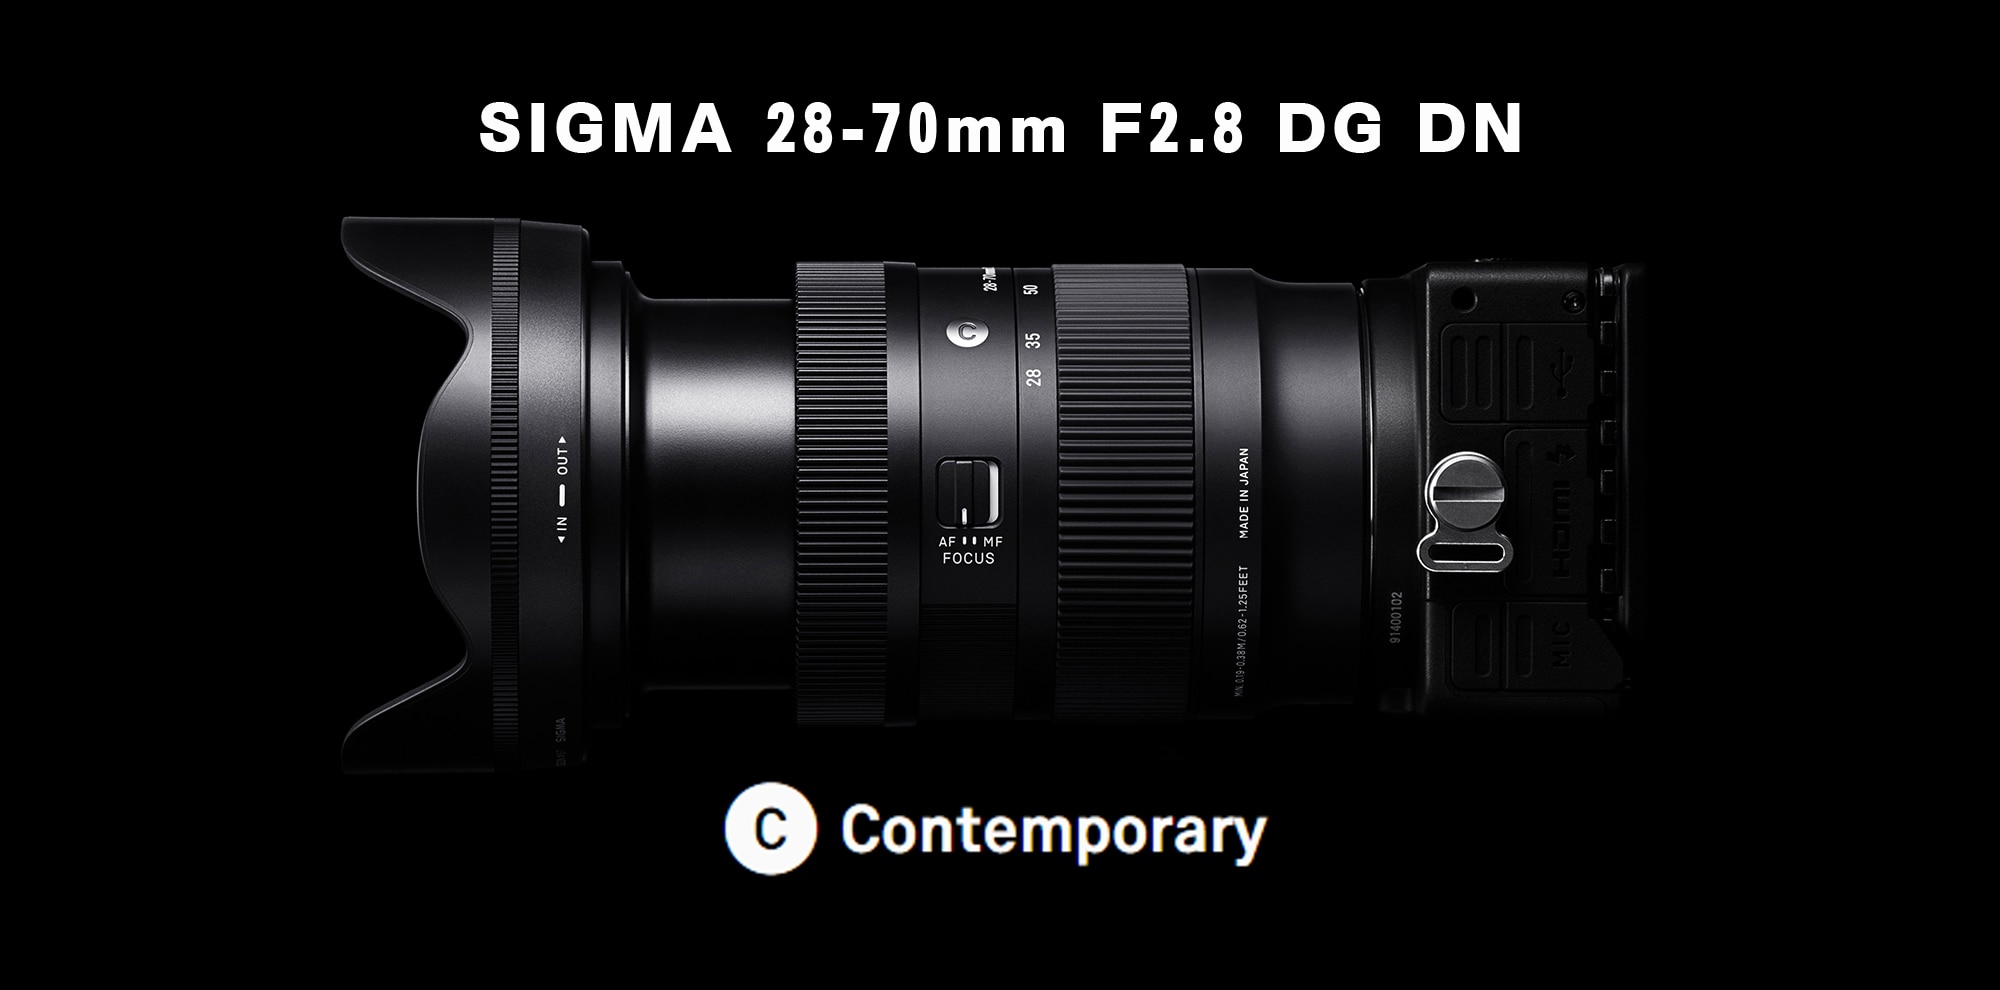 話題の新製品 シグマ28-70mm F2.8 DG DN | Contemporary 撮影レビュー